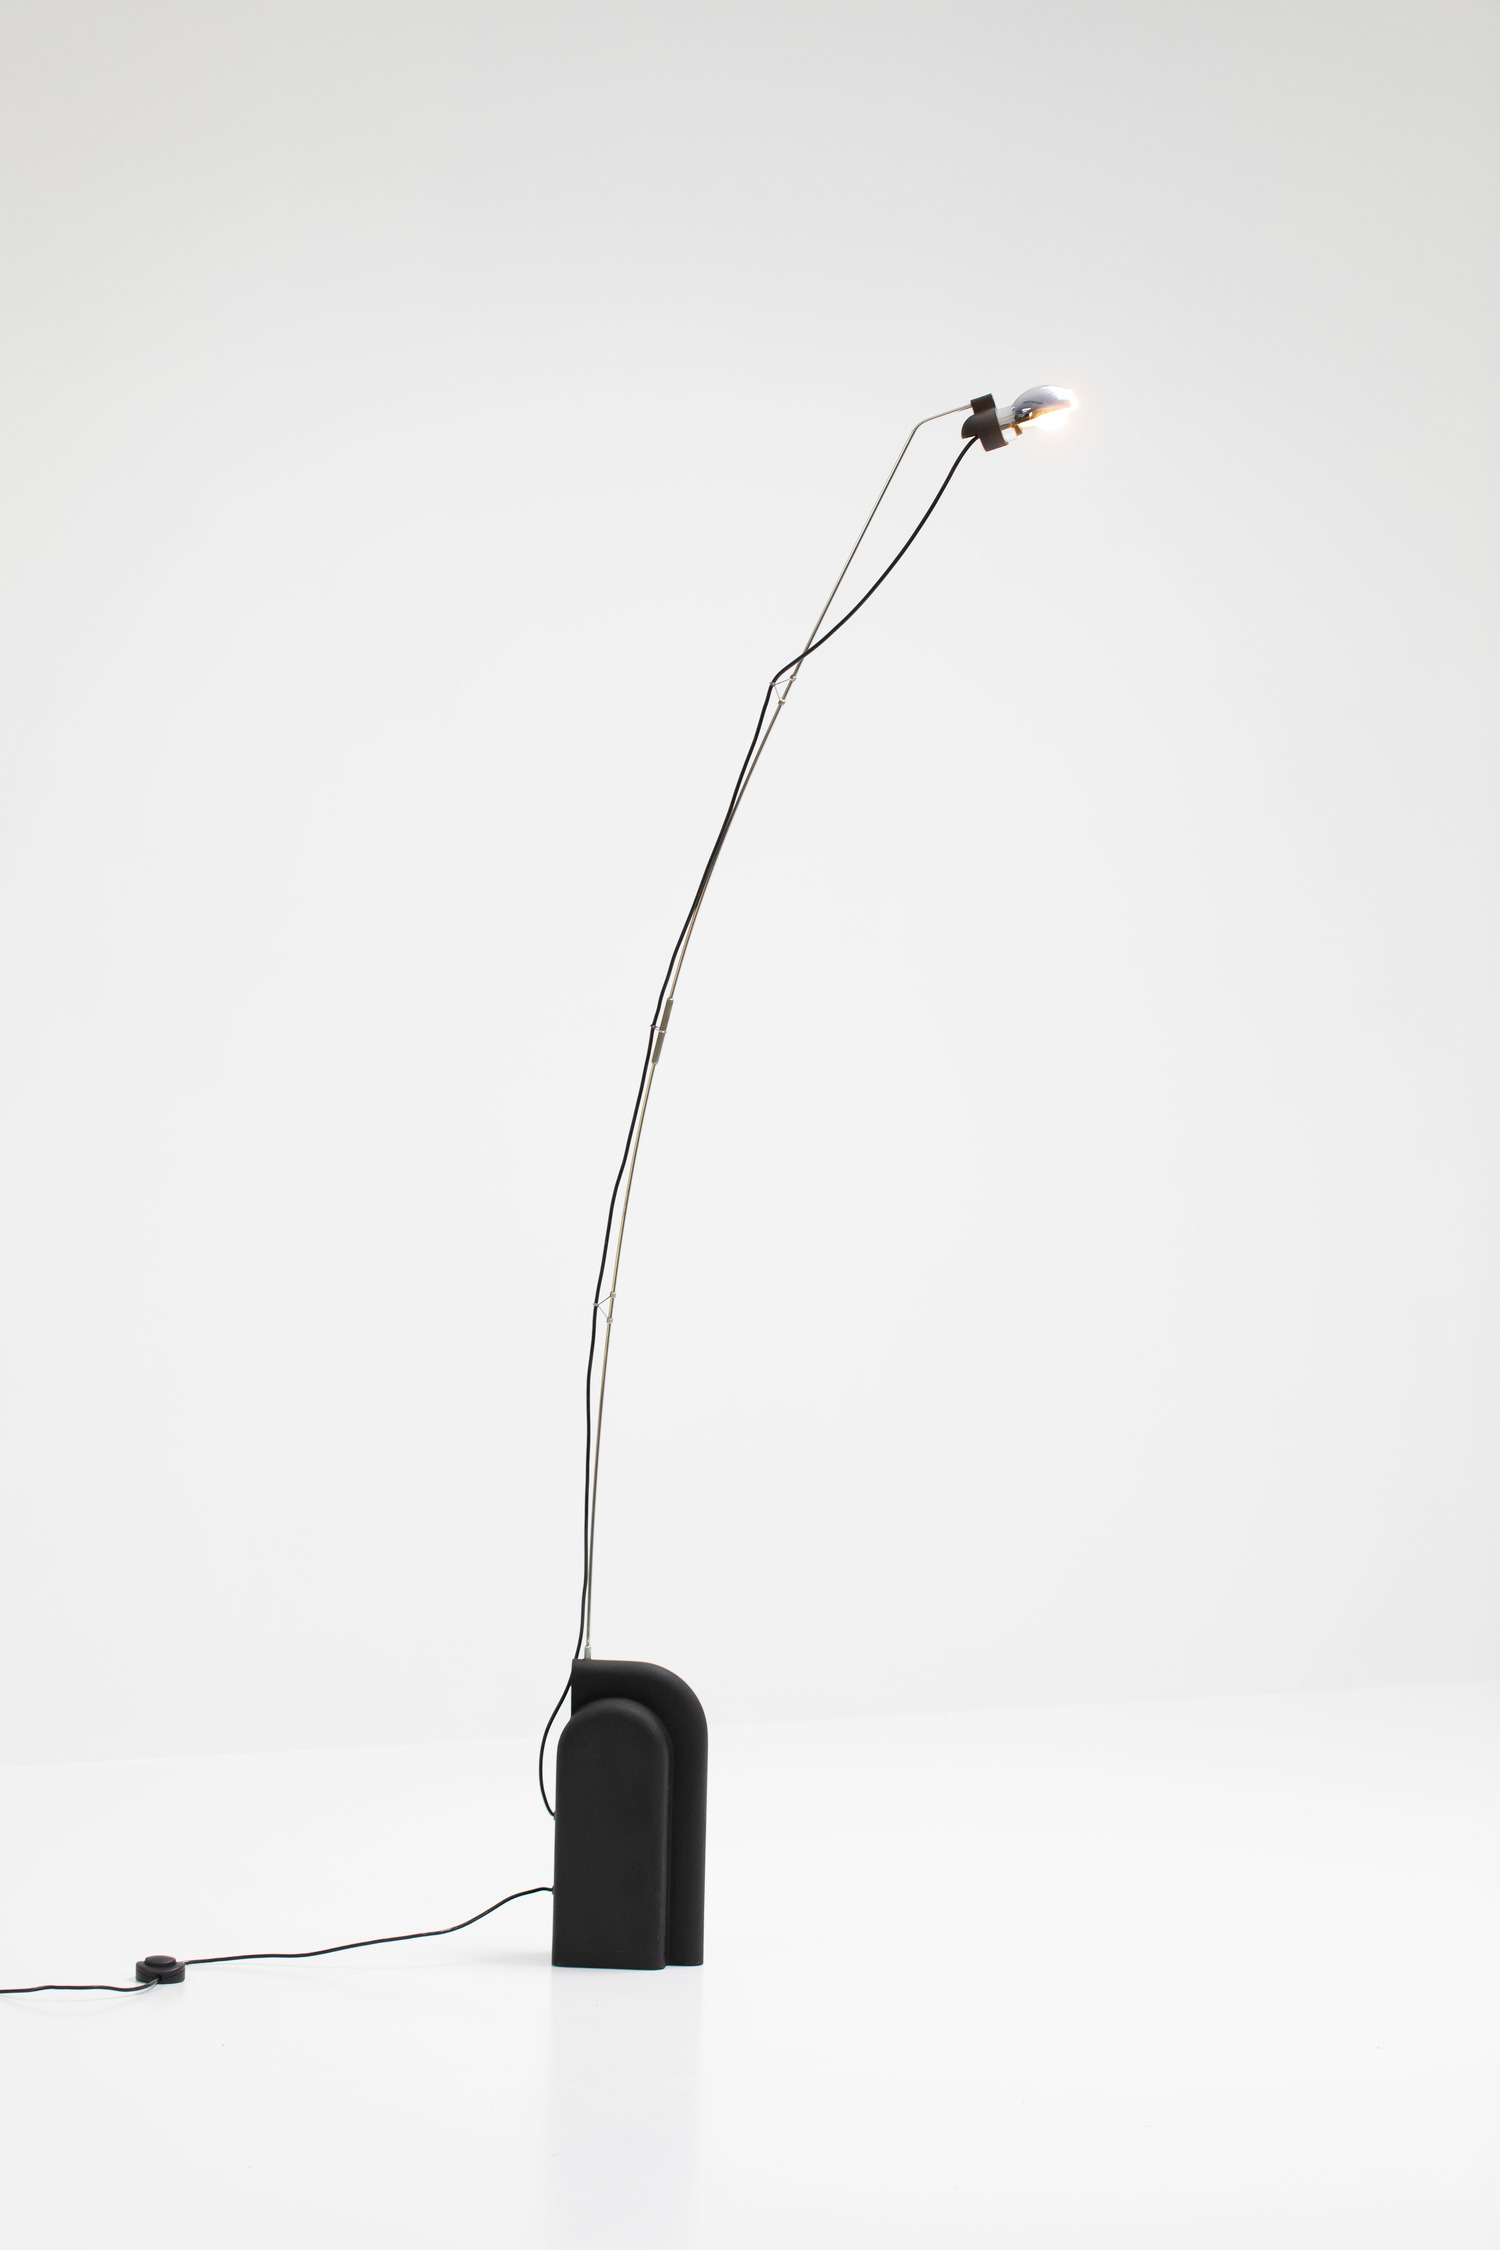 Ennio Chiggio floorlamp by Lumenform